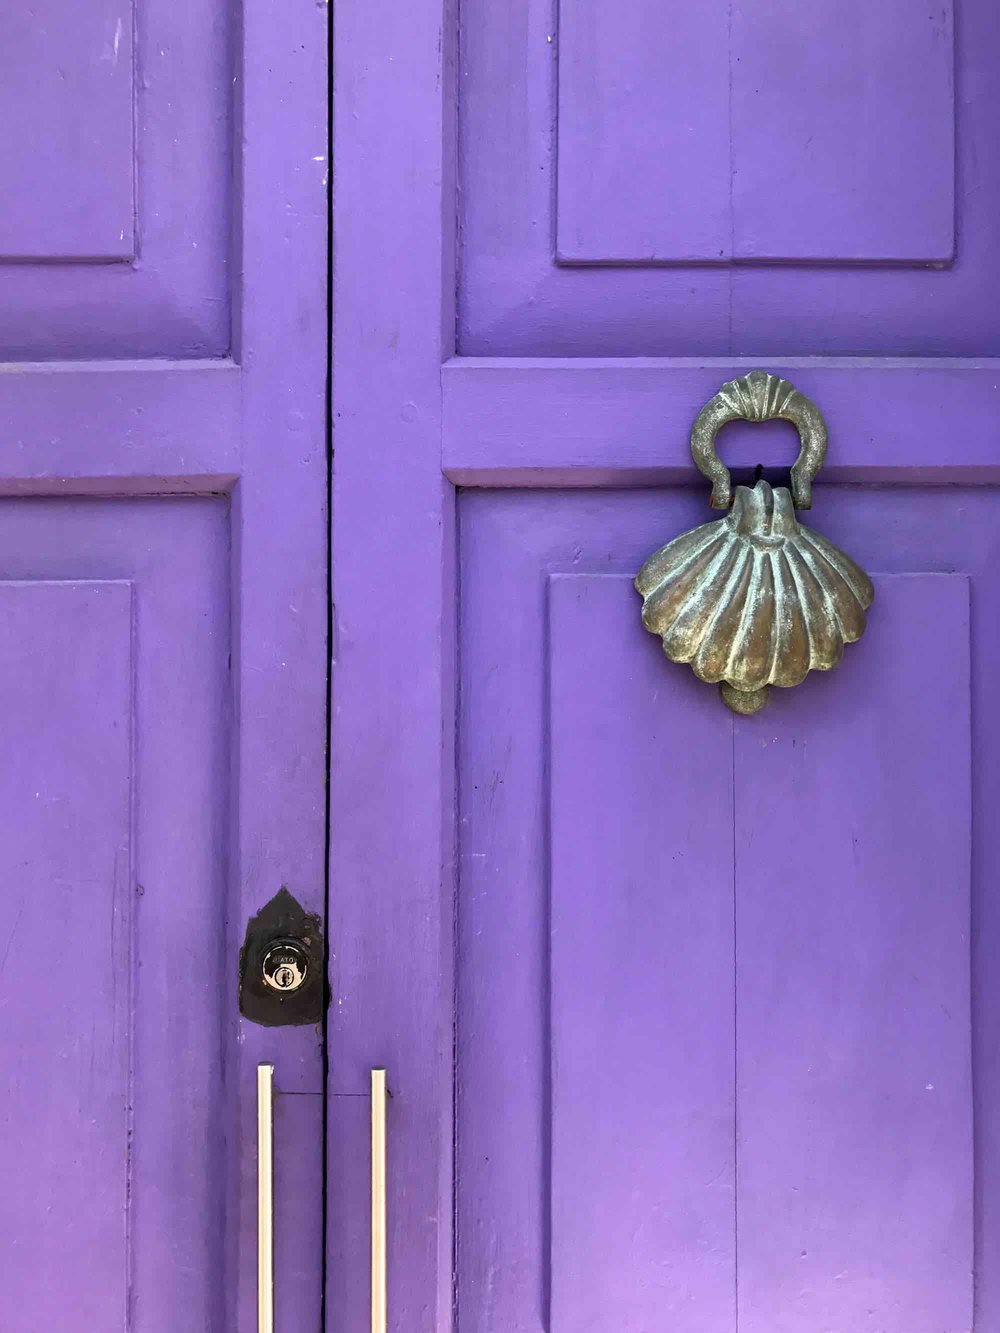 seashell door knocker | Doors and Door Knockers of Cartagena, Colombia | pictures of Cartagena, Colombia